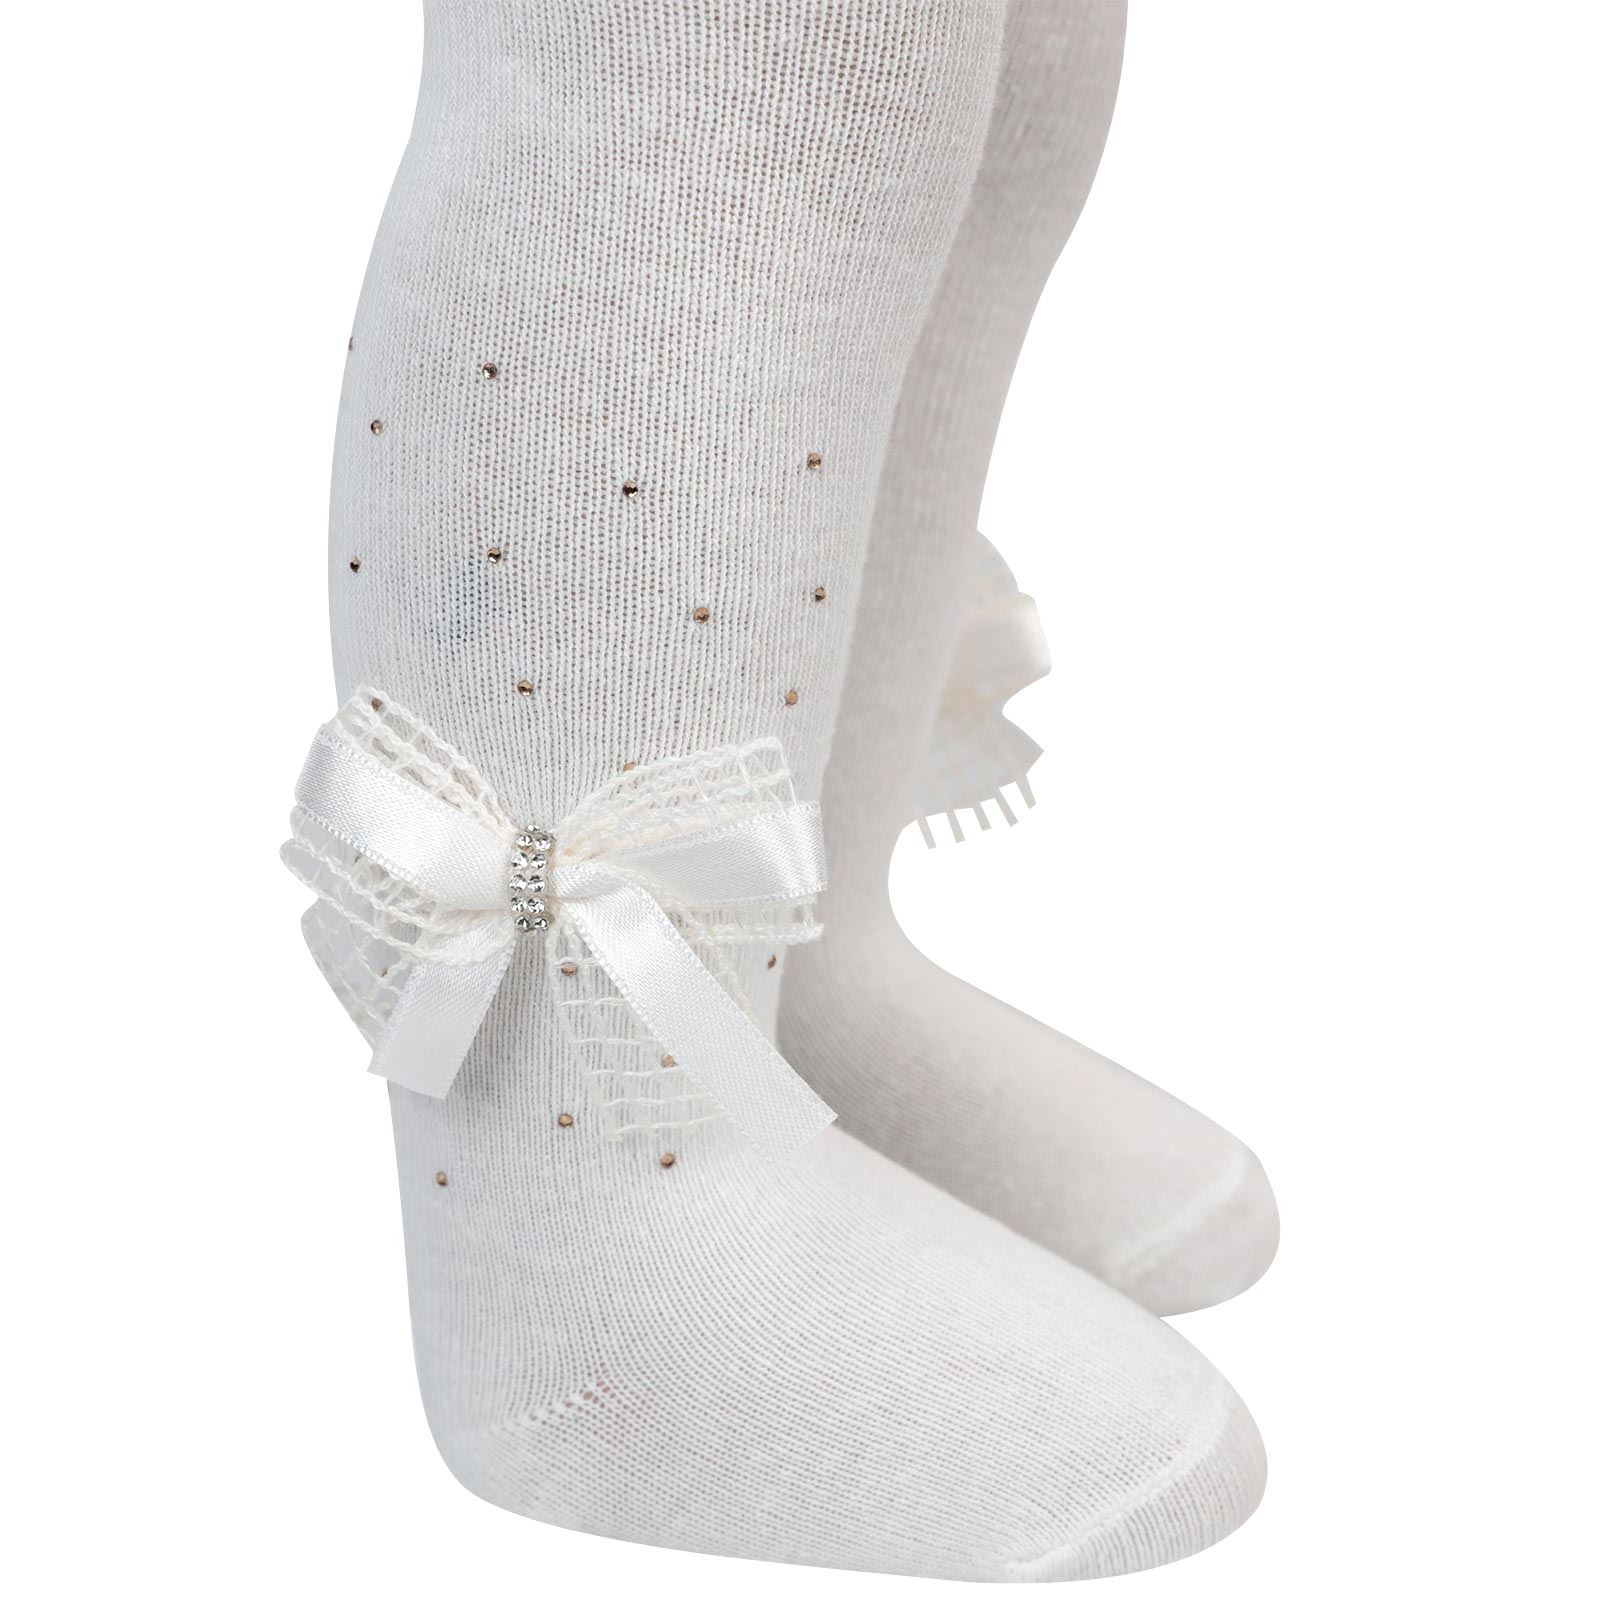 Artı Kız Bebek Aksesuarlı Külotlu Çorap 0-12 Ay Ekru